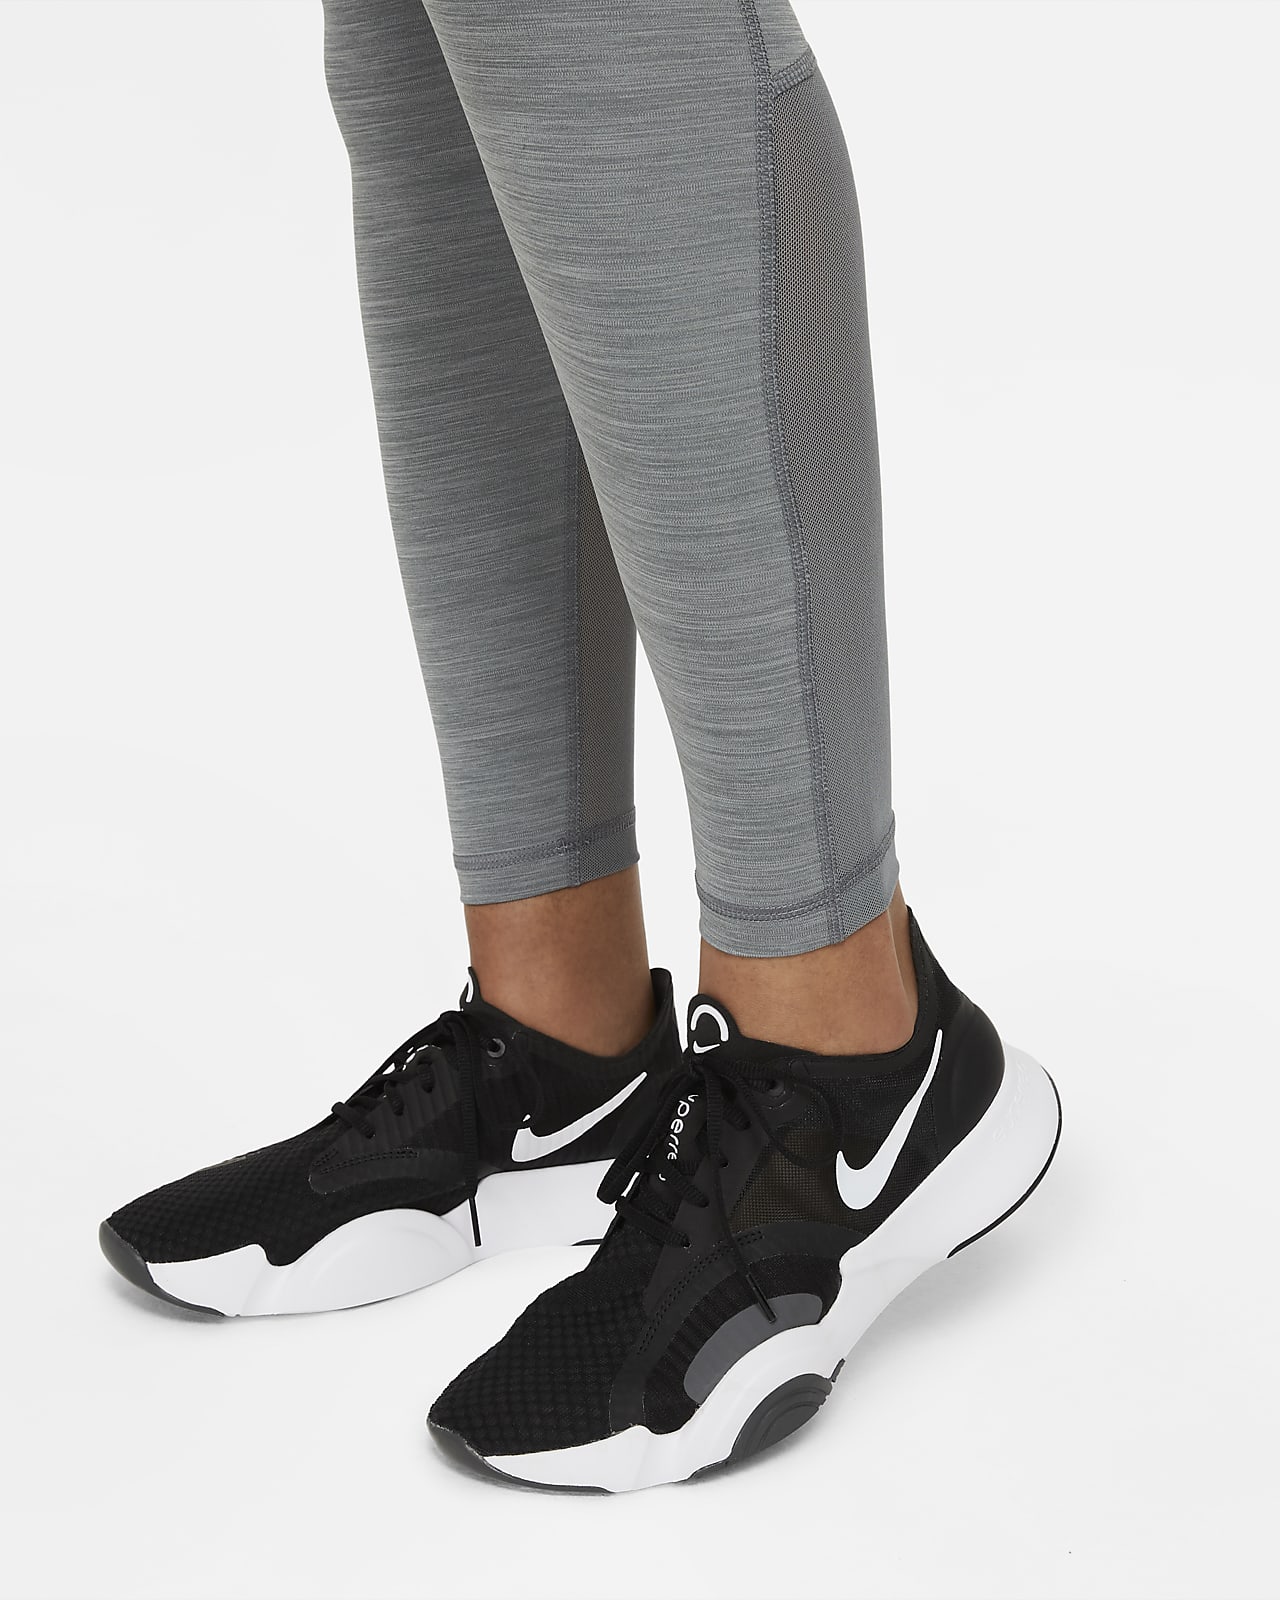 Comprar Mallas de Mujer - Comprar Leggins Nike Gris Baratas